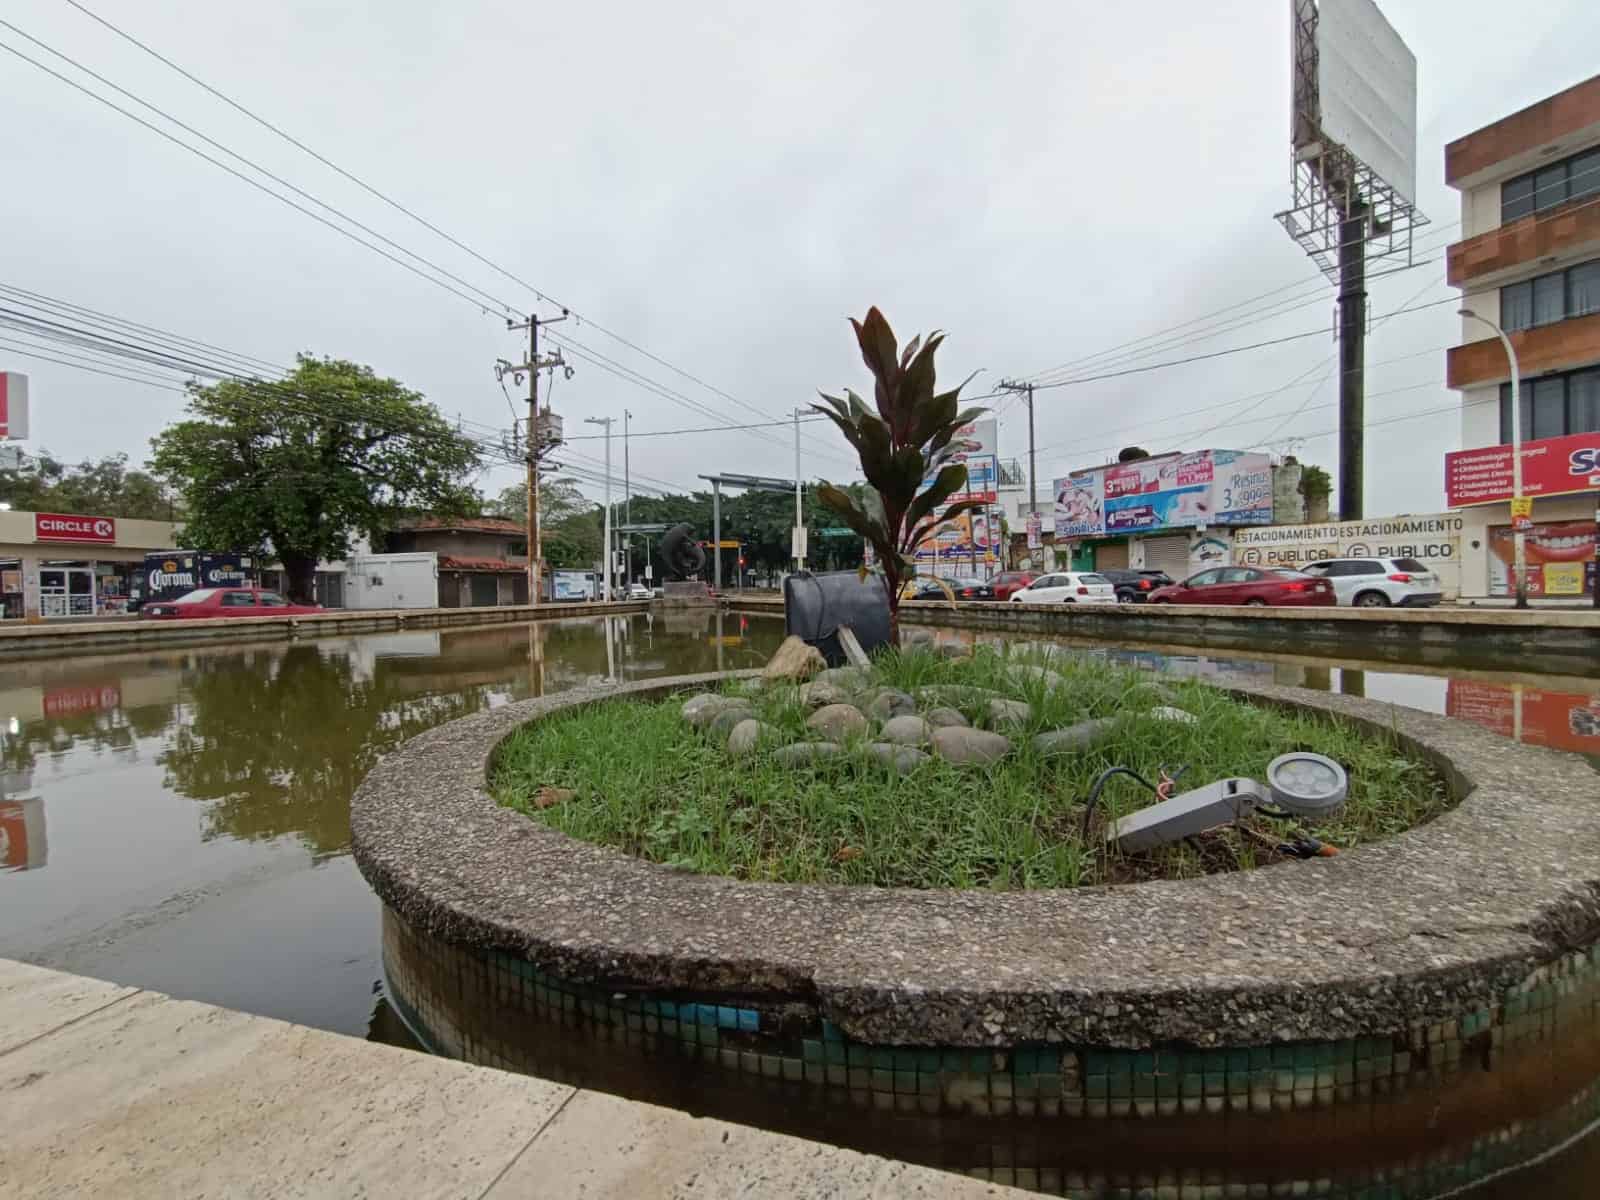 Se apagan las fuentes de Villahermosa... por vandalismo y robos